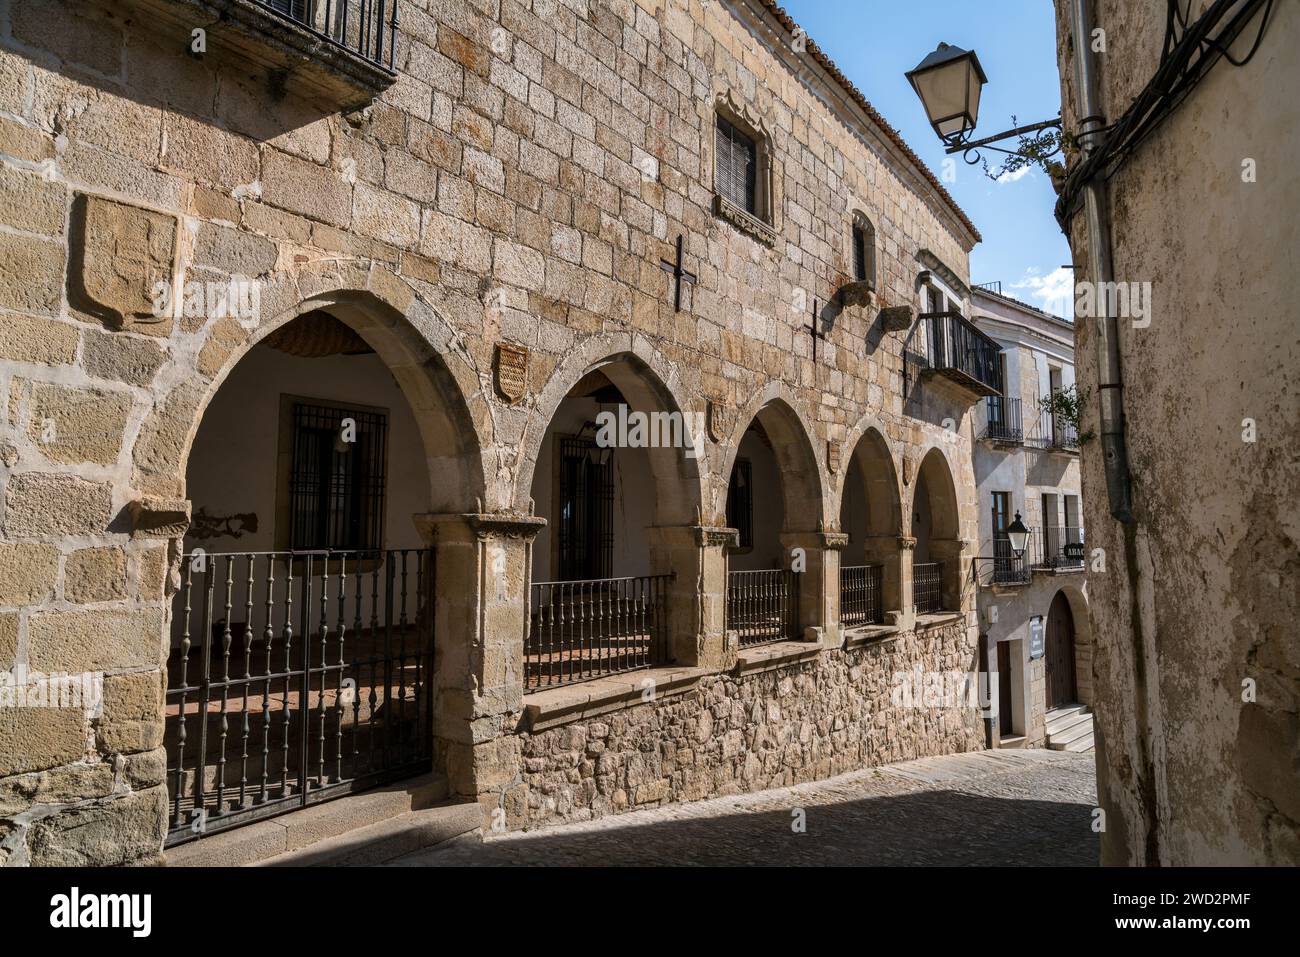 Casas Principales de los Chaves Sotomayor in Trujillo, Extremadura, Spain Stock Photo